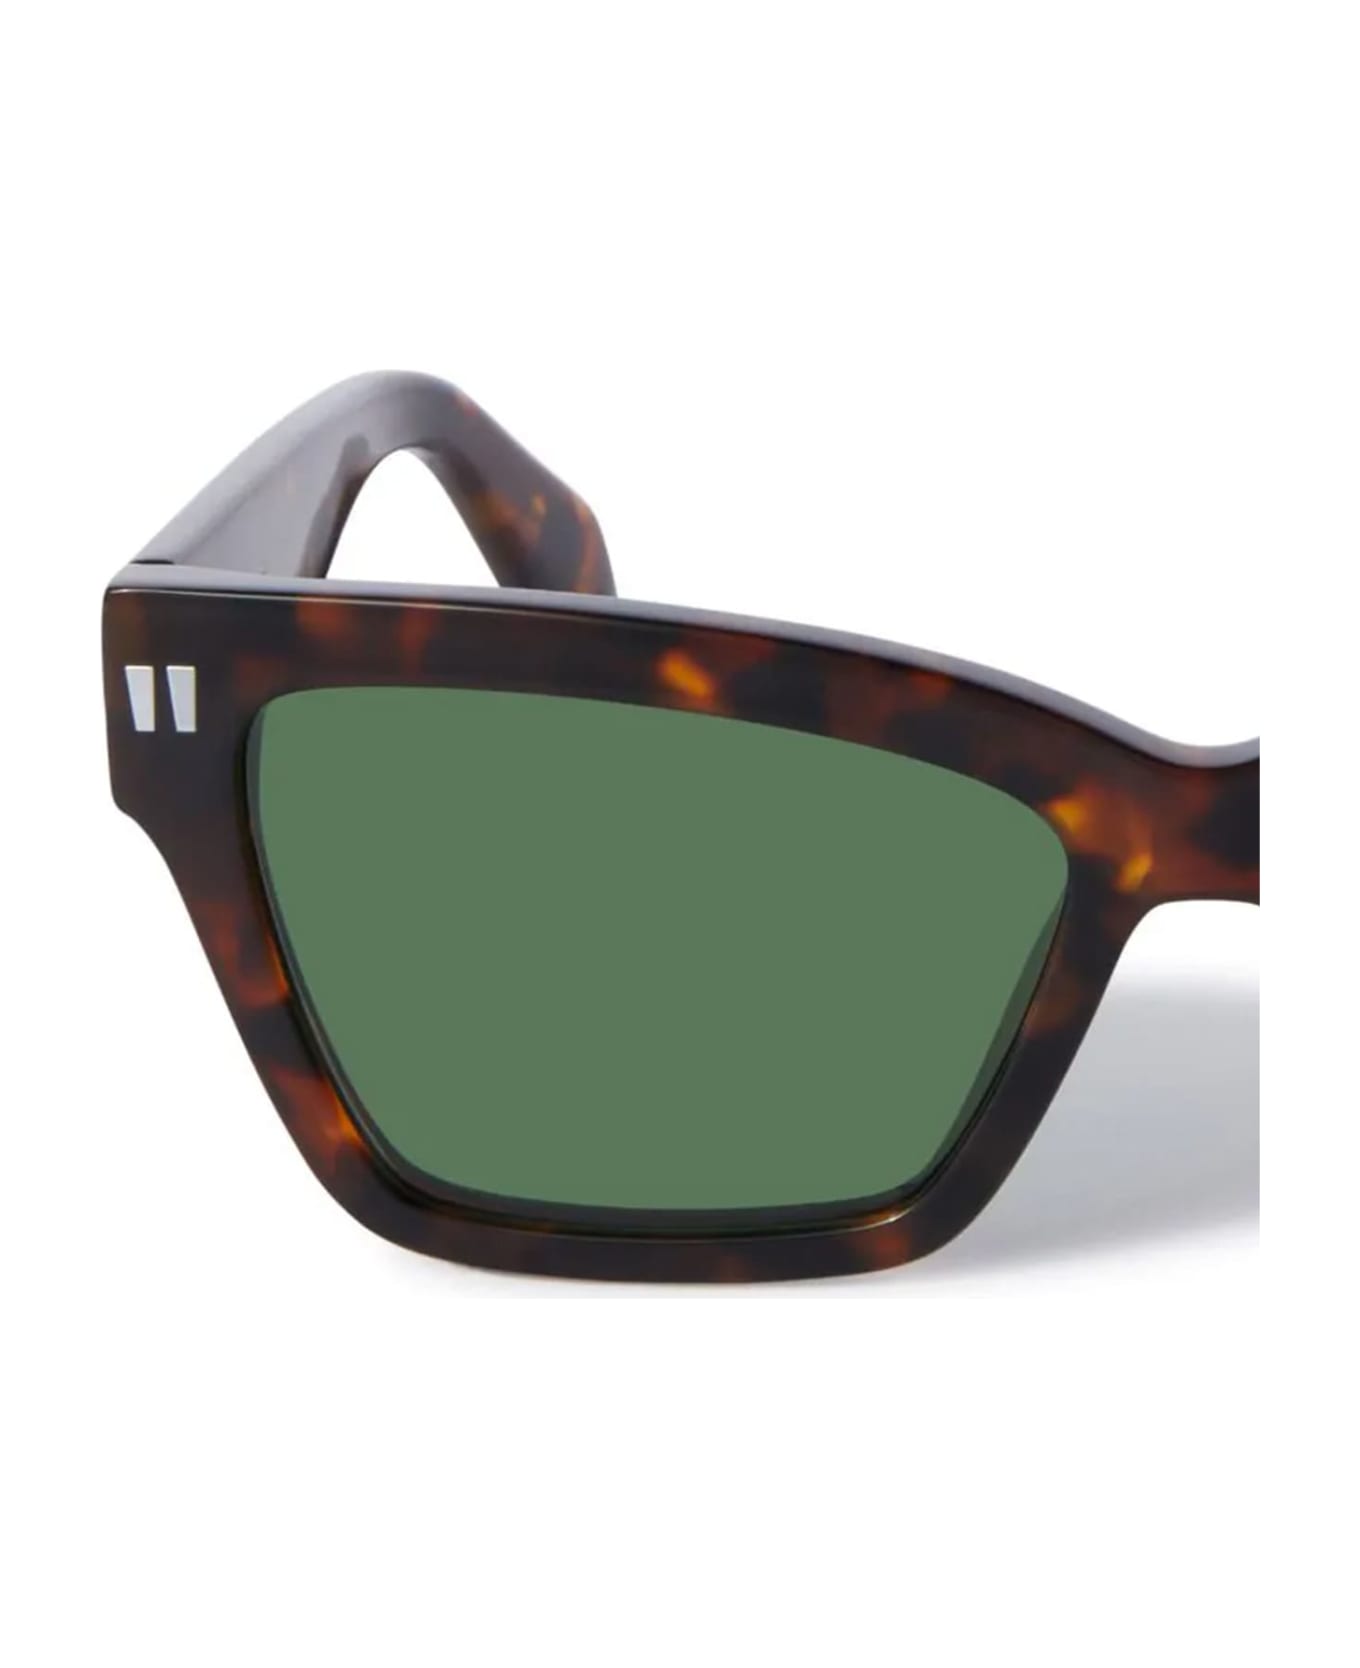 Off-White Cincinnati Sunglasses - Havana サングラス